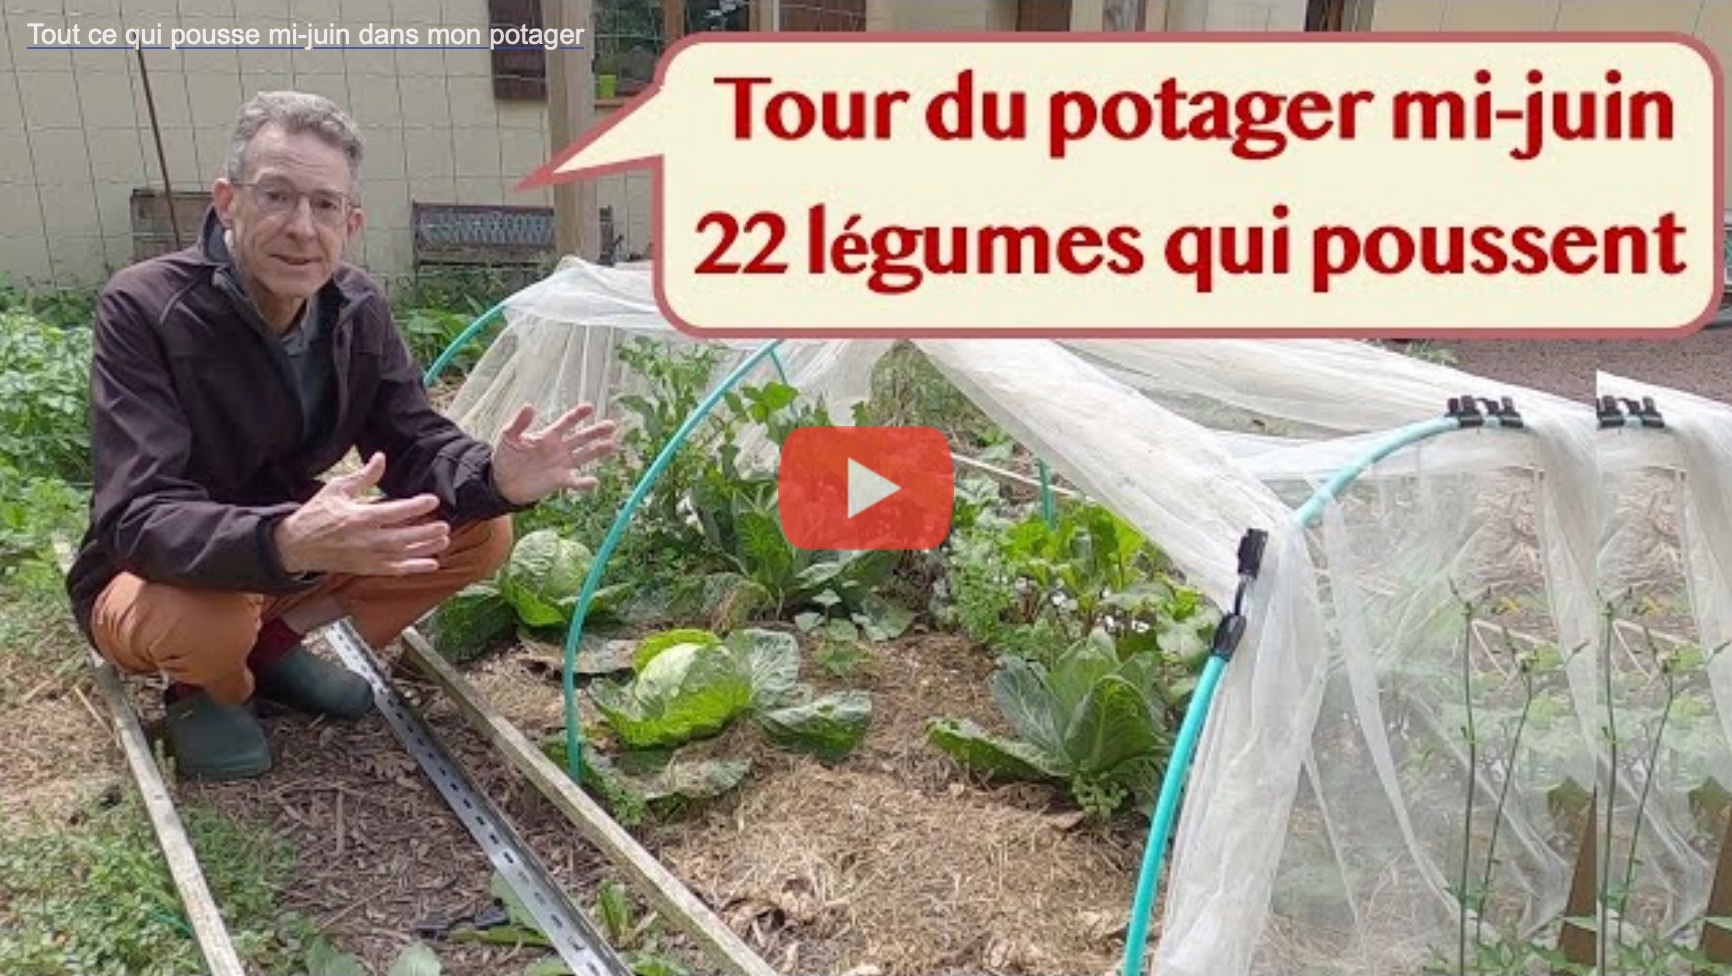 Le tour du potager mi-juin : 22 légumes différents en train de pousser